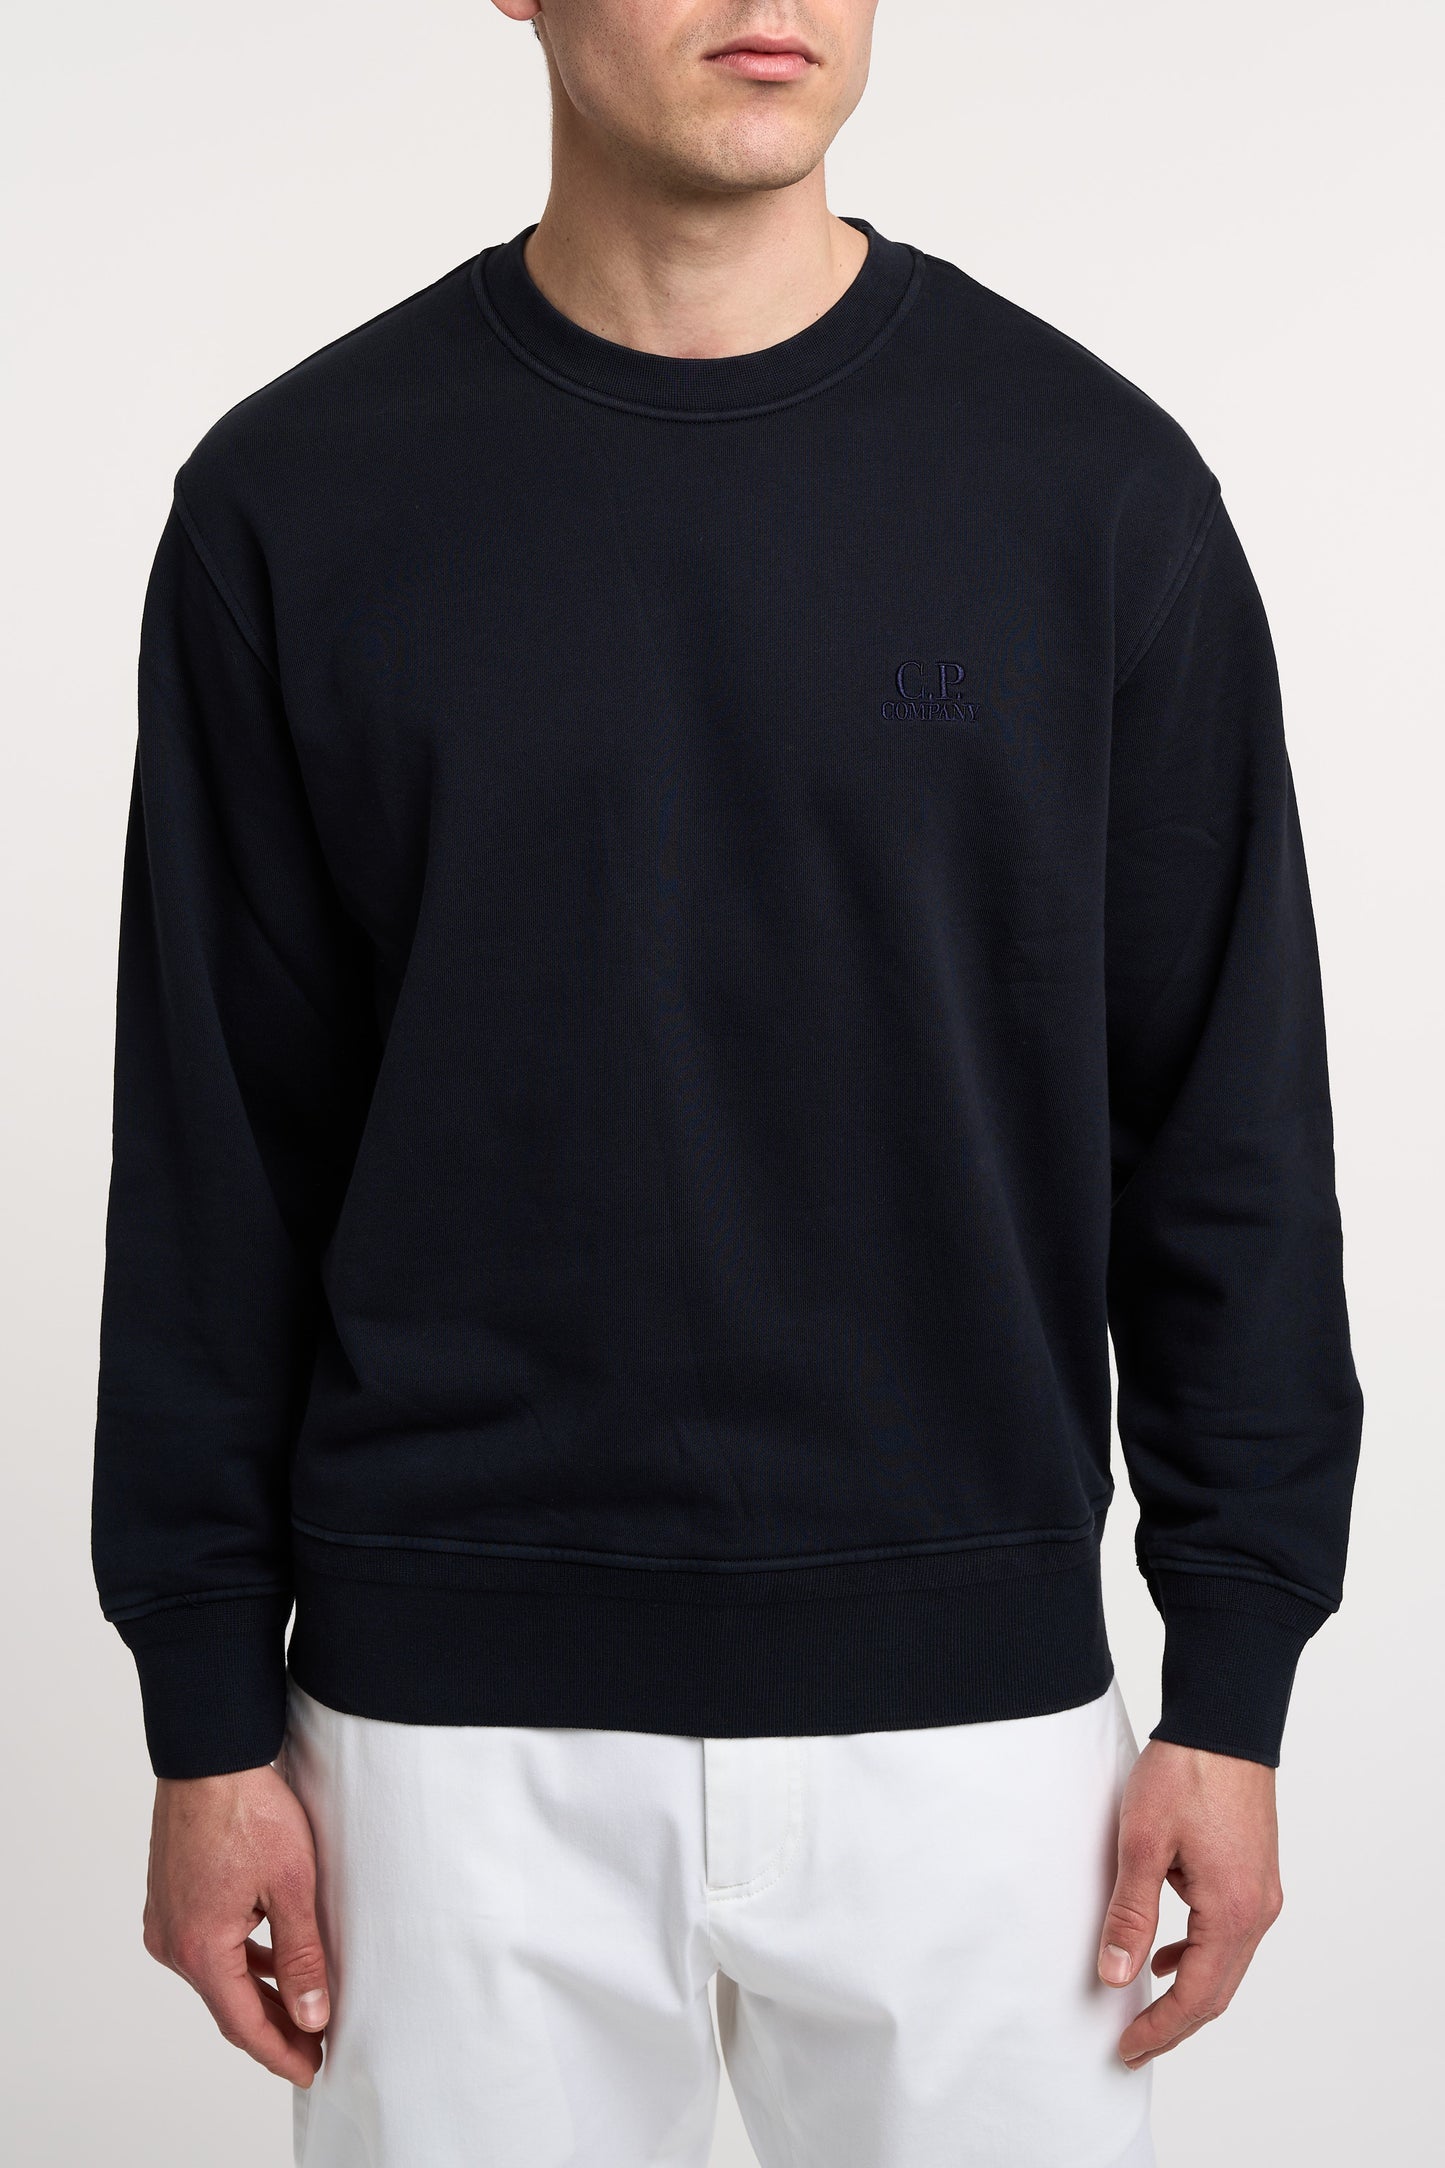  C.p. Company Crewneck Sweatshirt 100% Co Multicolor Blu Uomo - 1